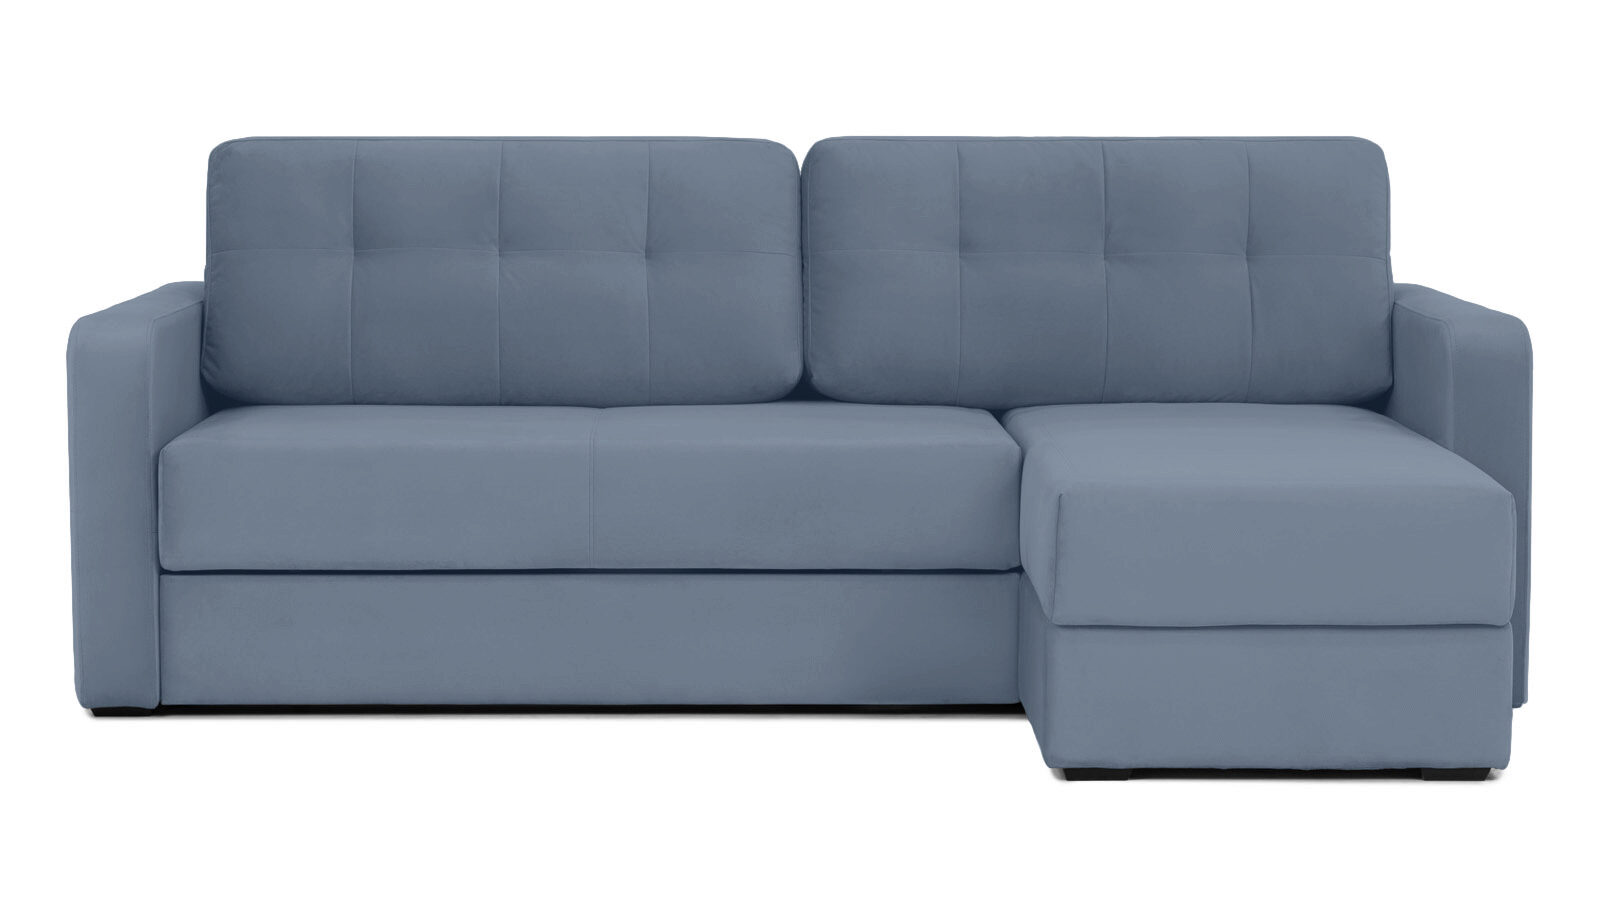 Угловой диван Loko Pro с широкими подлокотниками, с матрасом средней жесткости